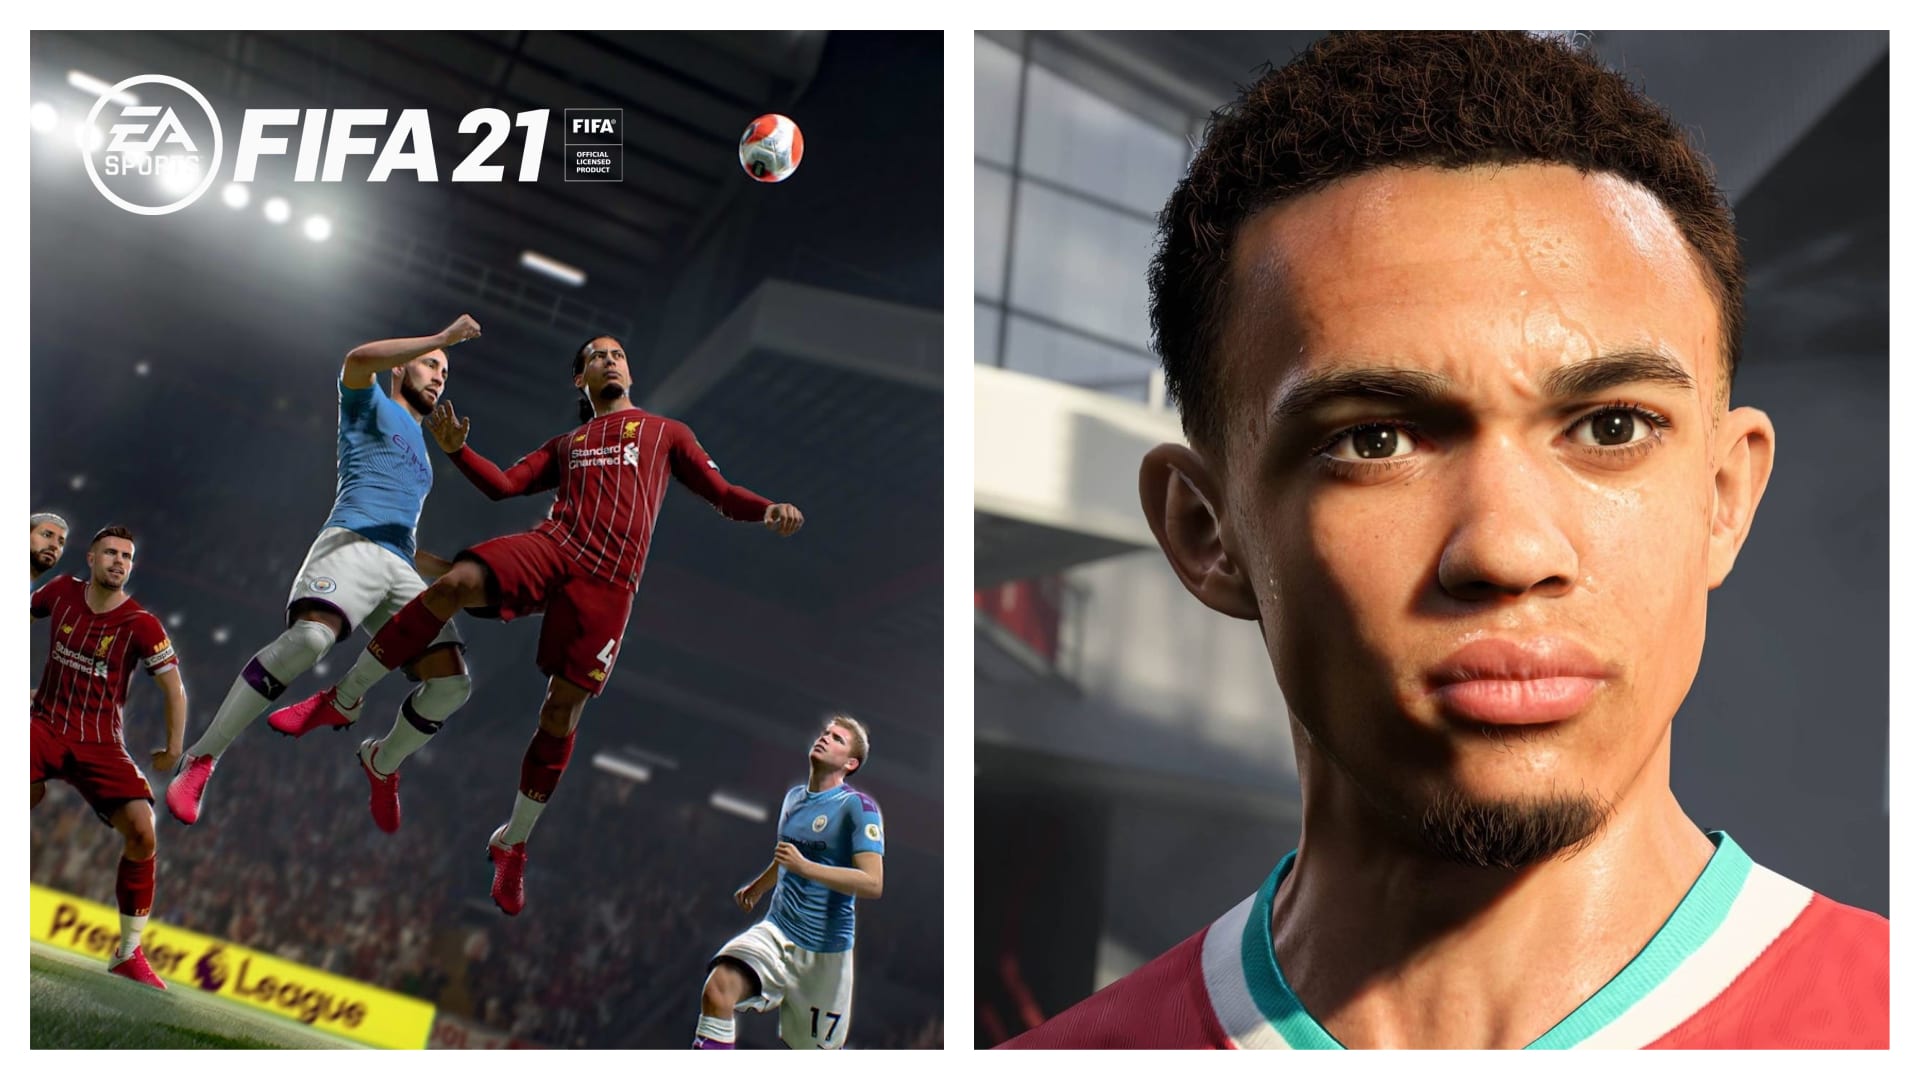 První fotky z next-gen verze hry FIFA 21